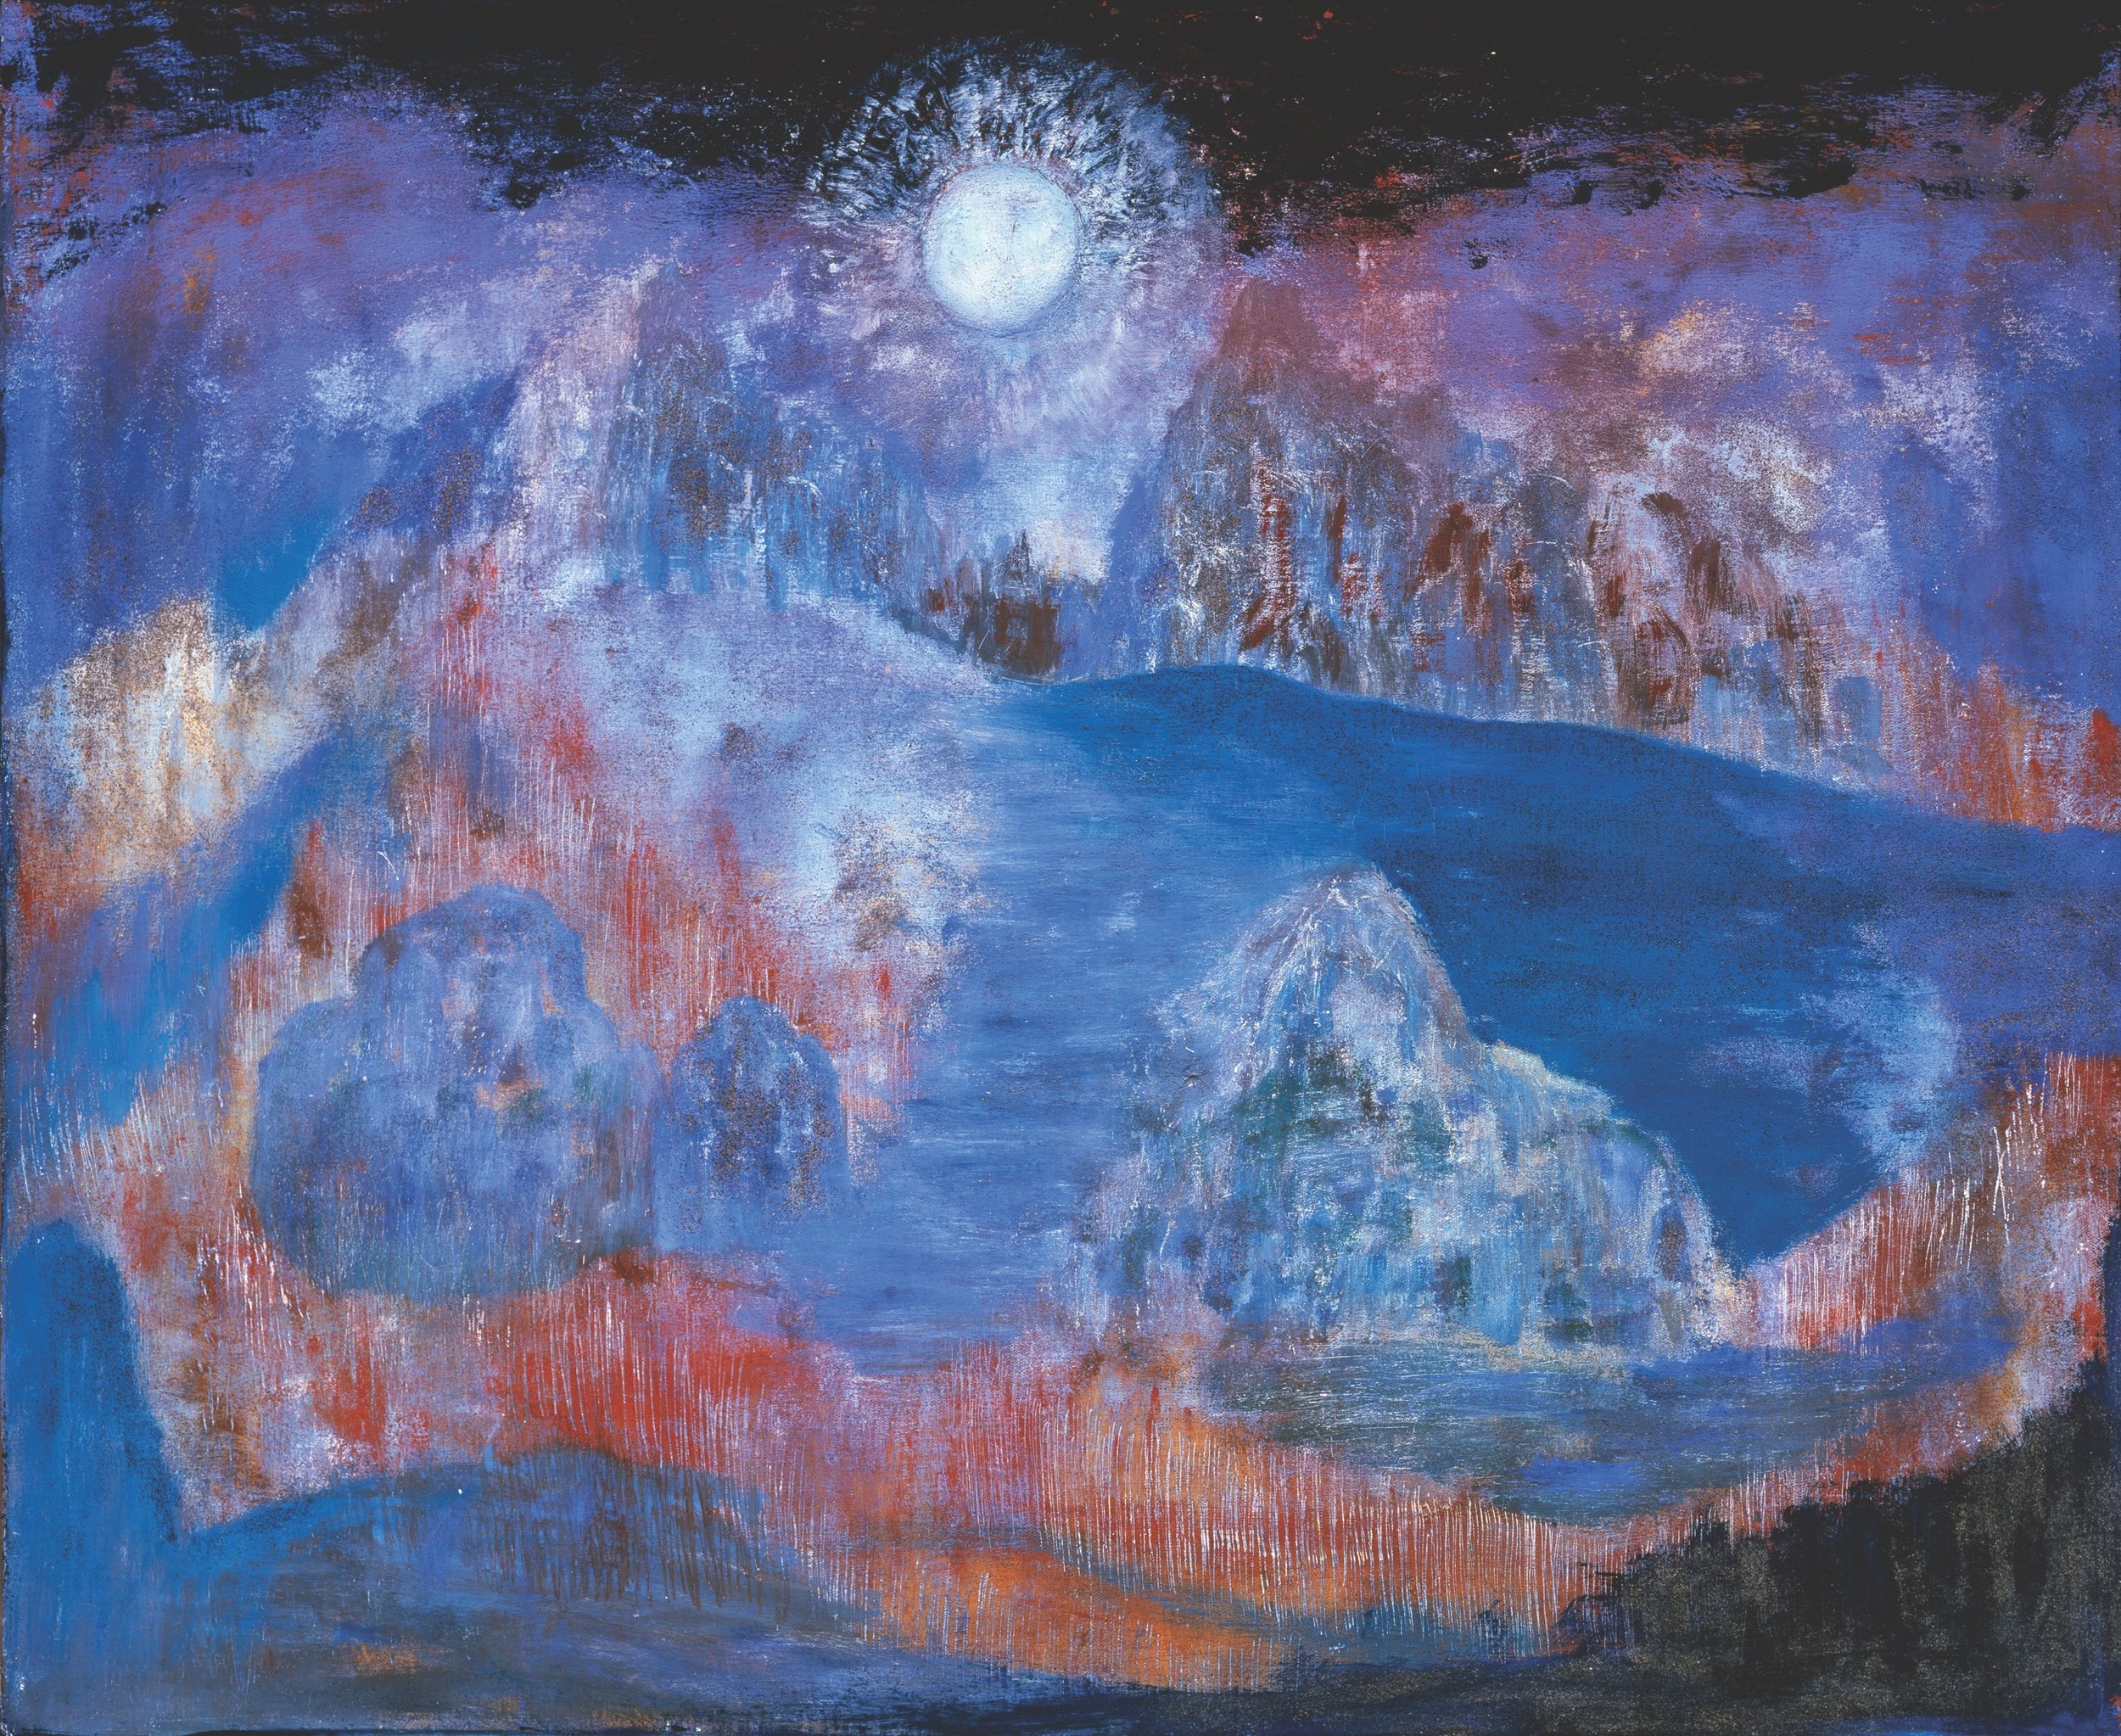  Alice Rahon,  La noche de Tepoztlán , 1964, oil and sand on canvas, 27 1/2 x 33 13/16 inches (69.9 x 85.9 cm) 